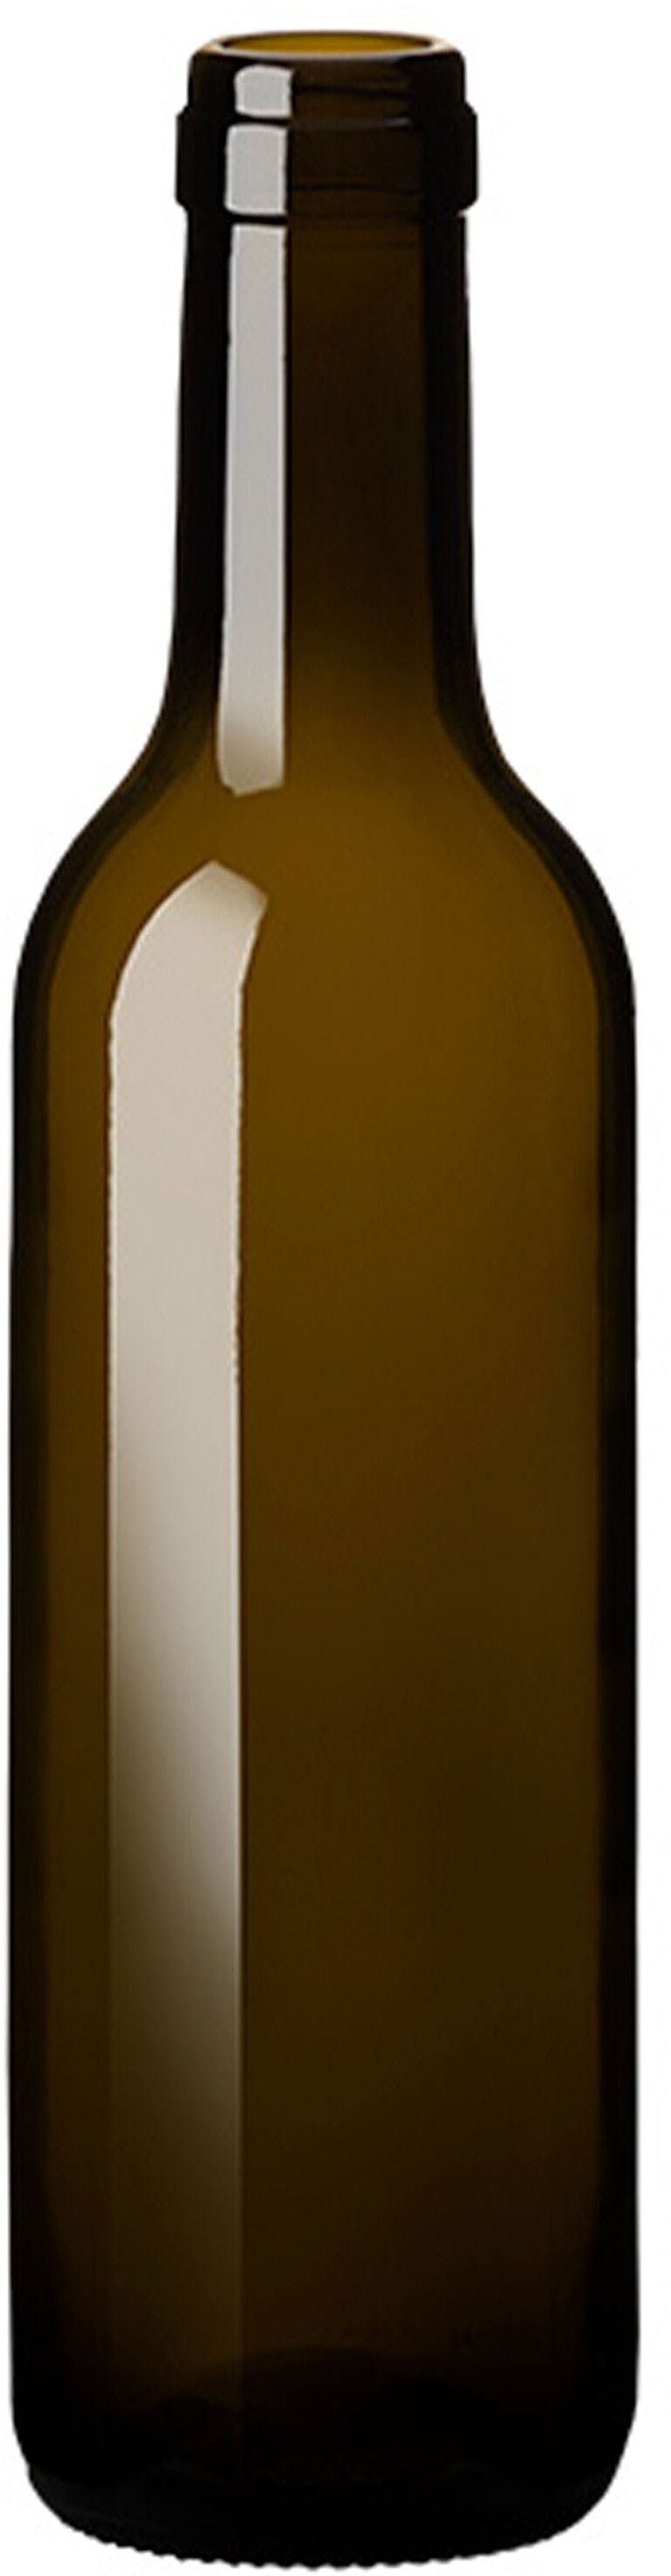 Bottle BORDELESA  STD 375 ml BG-Cork